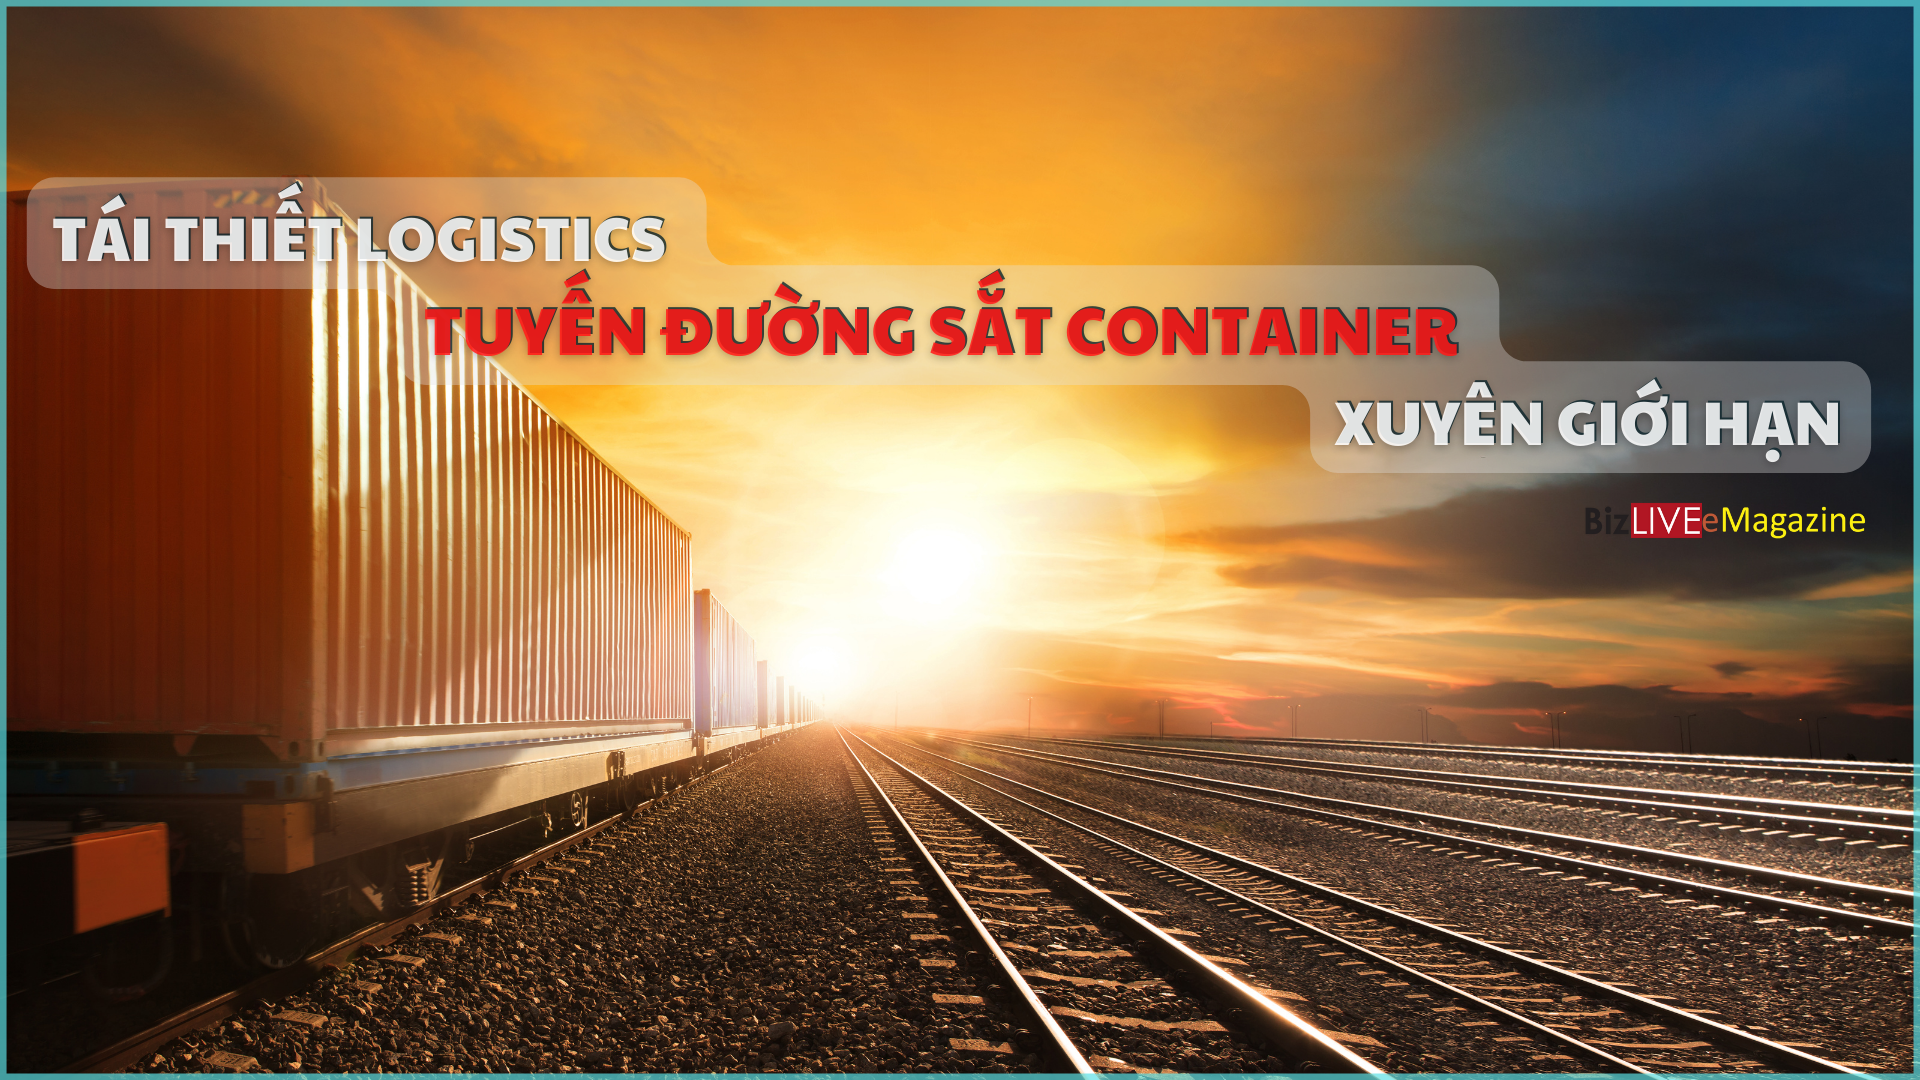 Tái thiết logistics và tuyến đường sắt container xuyên giới hạn